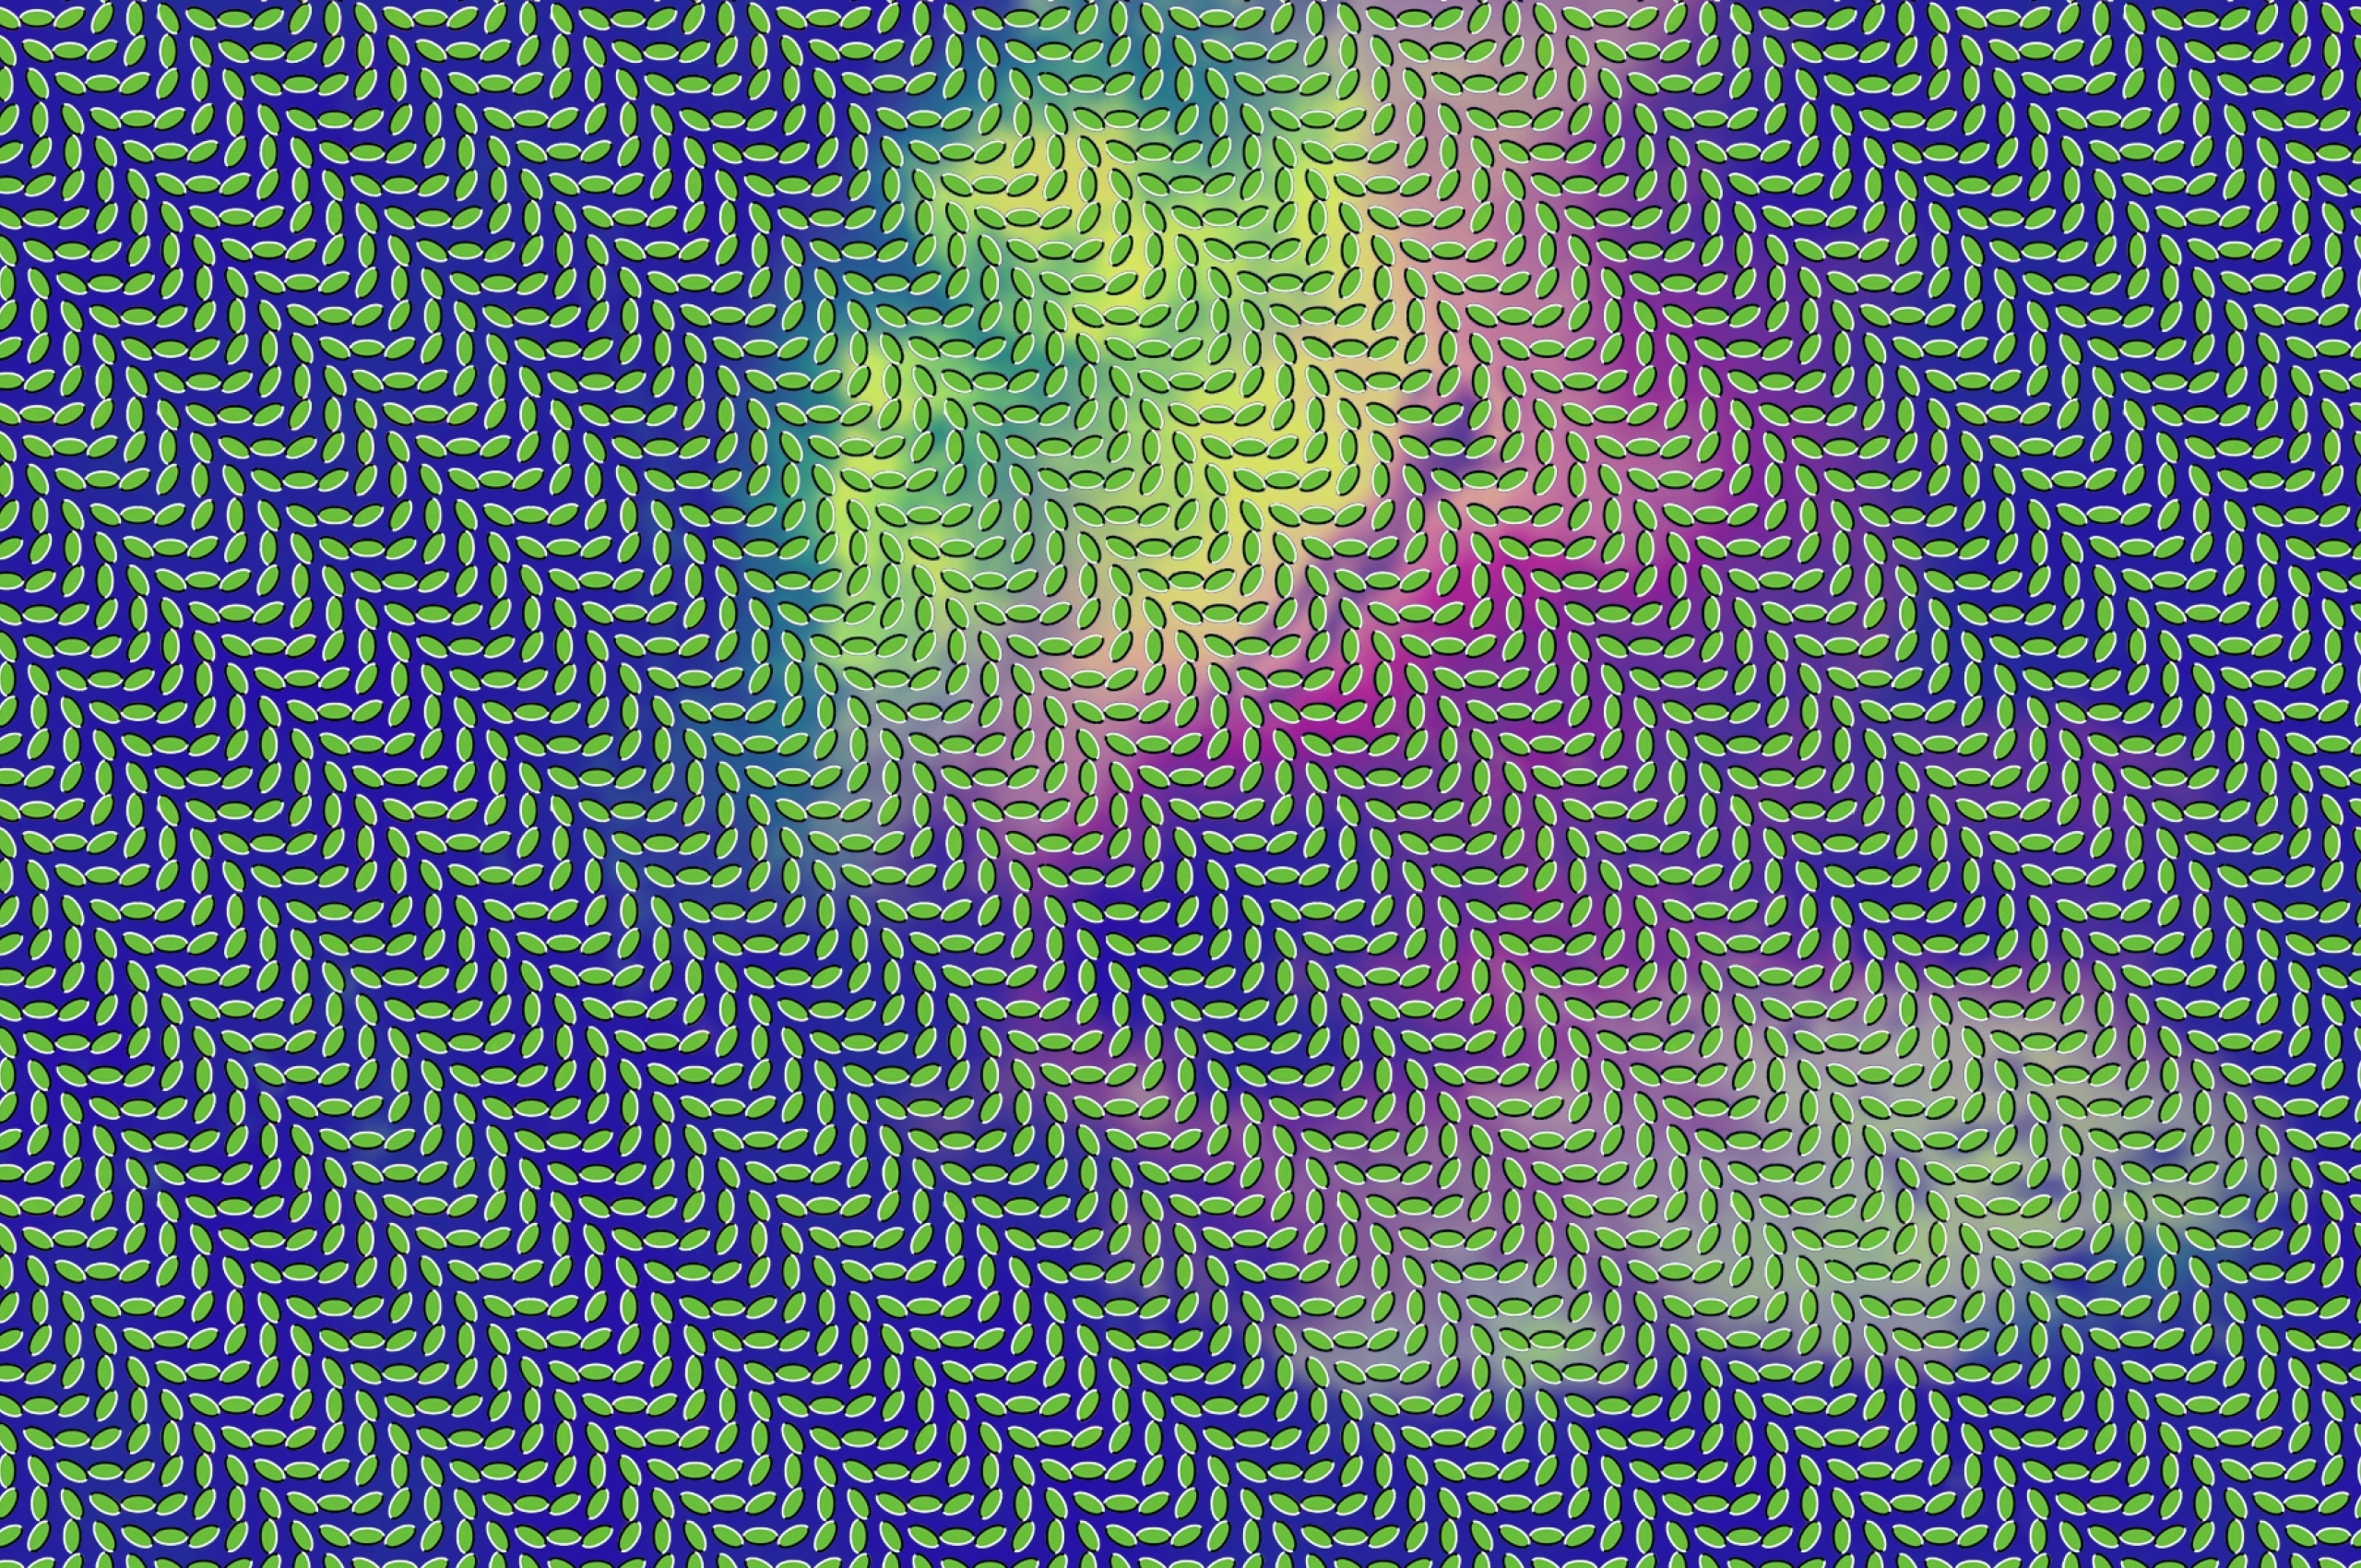 Движущаяся картина 3. Merriweather Post Pavilion. Оптические иллюзии. Фон для расслабления глаз. Фон иллюзия.